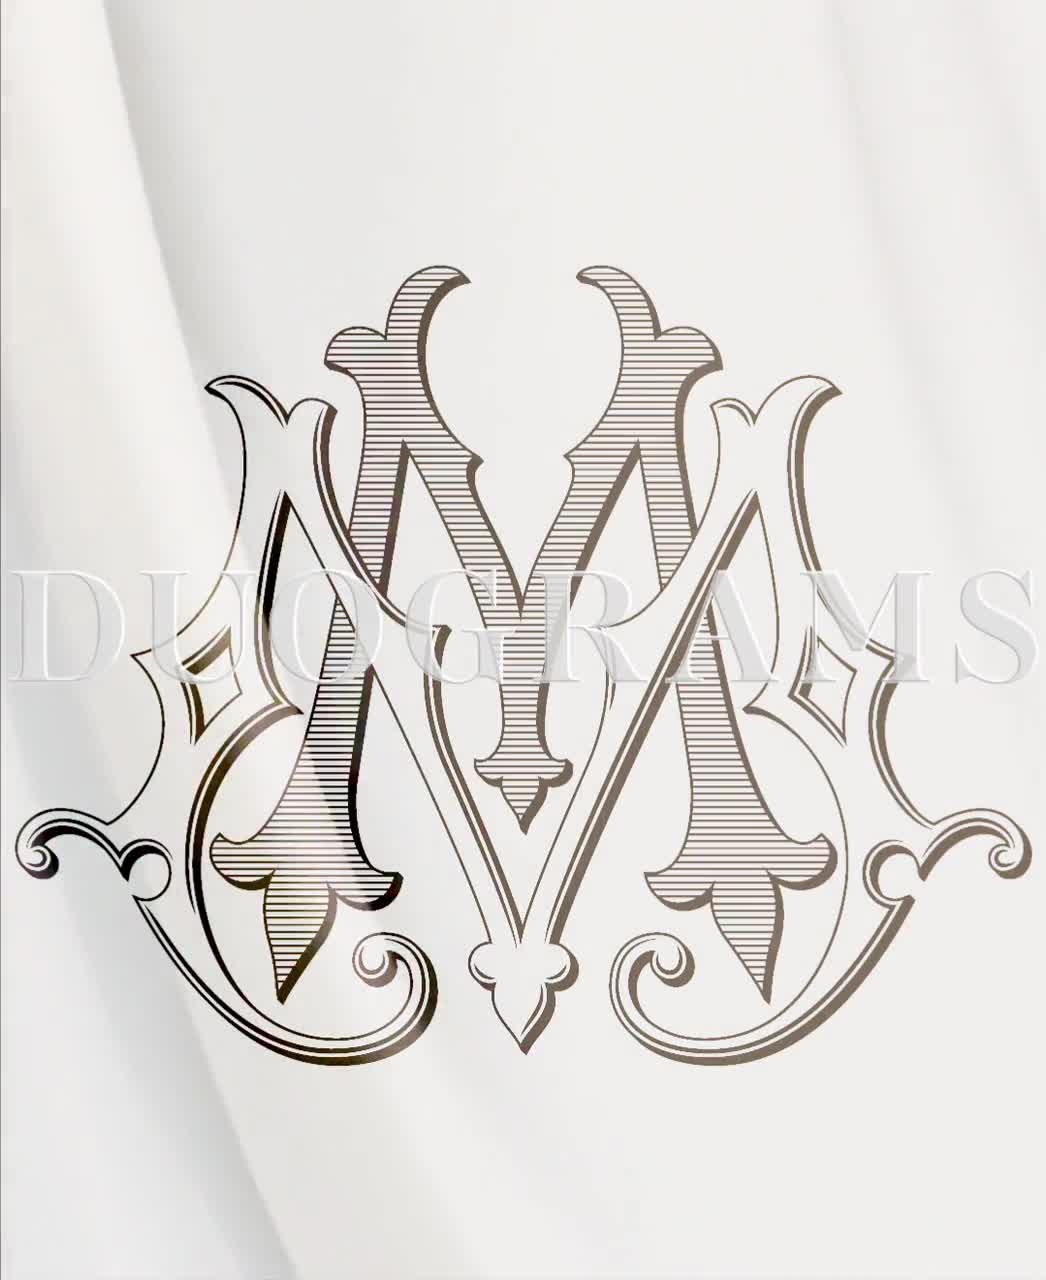 mm wedding logo